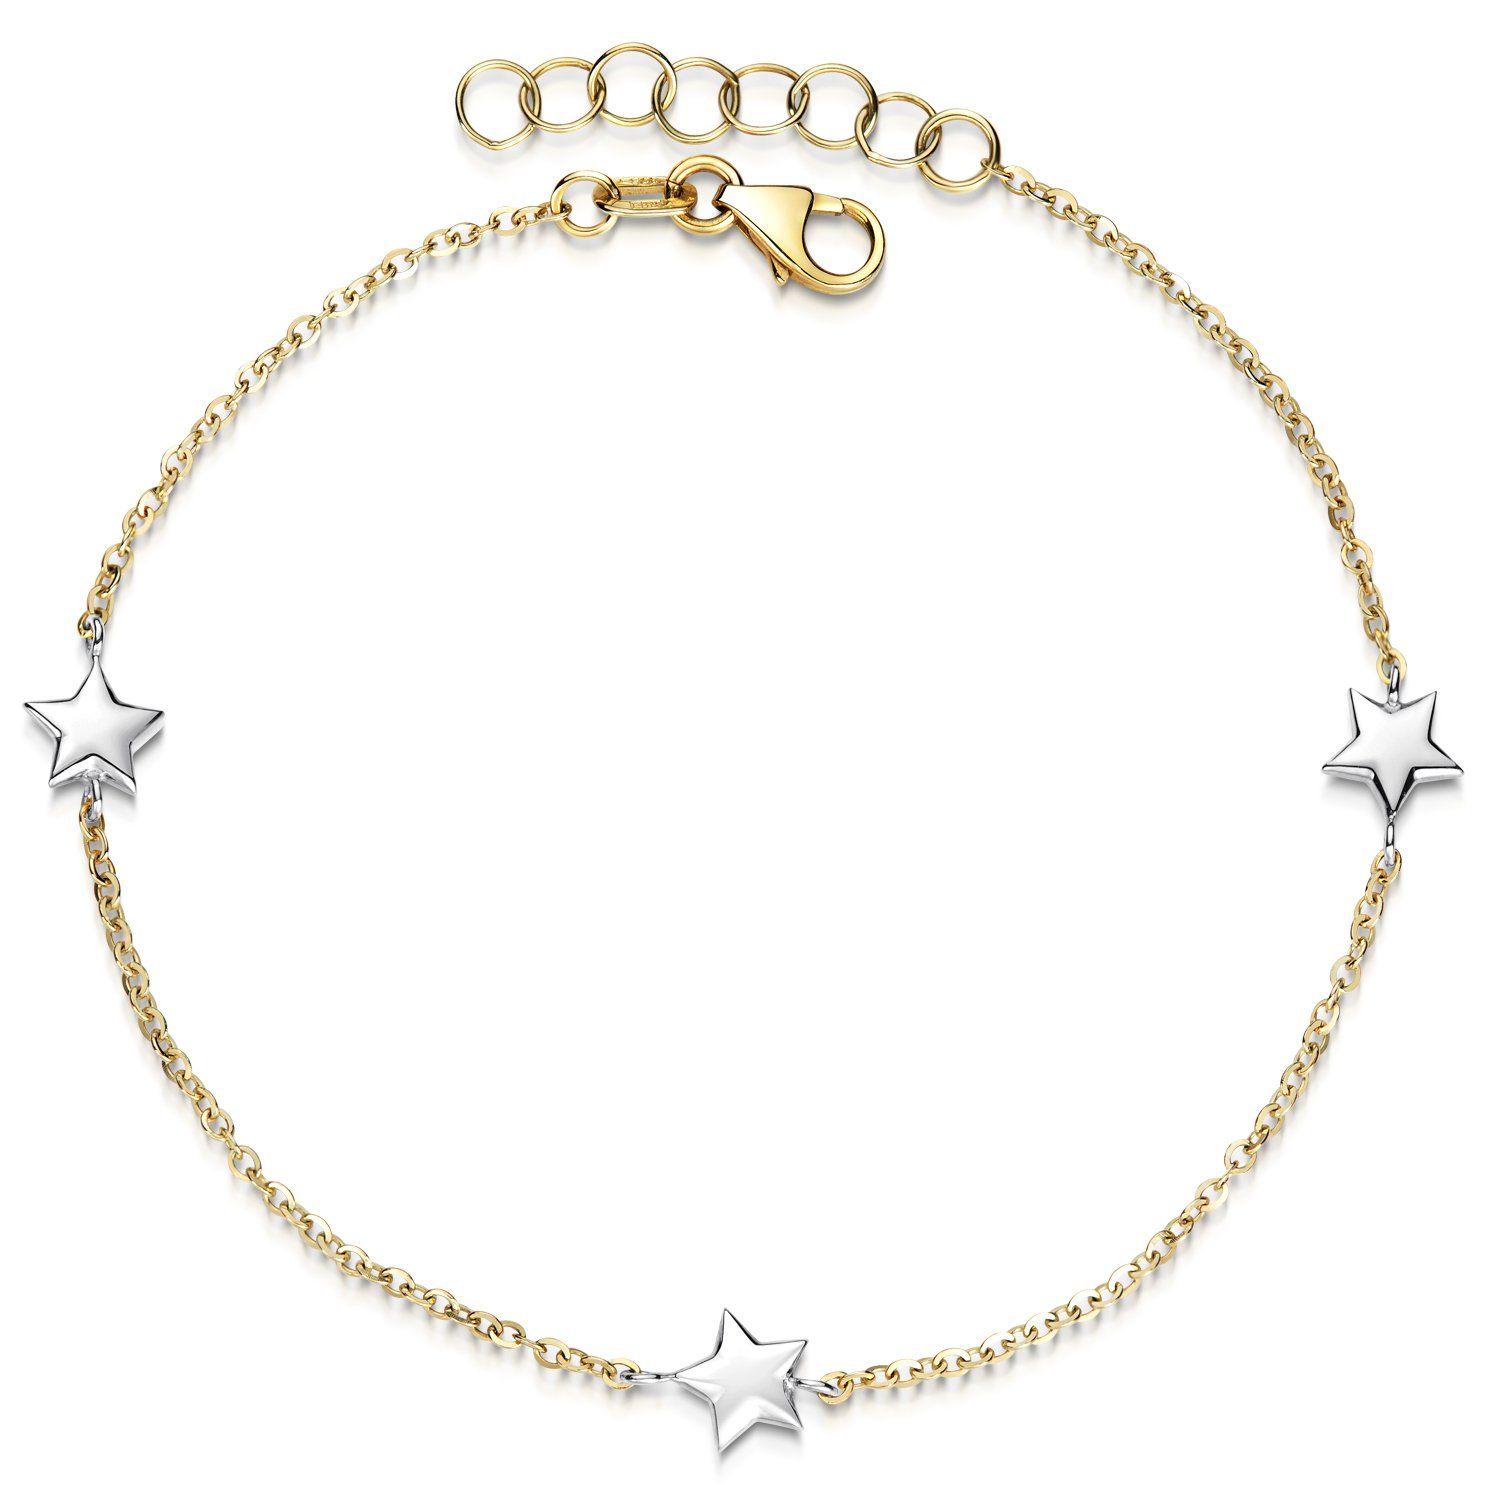 Materia Armkette Kinderarmband Echtgold Sterne / Sternchen 16-18cm GA-16, 375 Gelbgold, 375 Weißgold